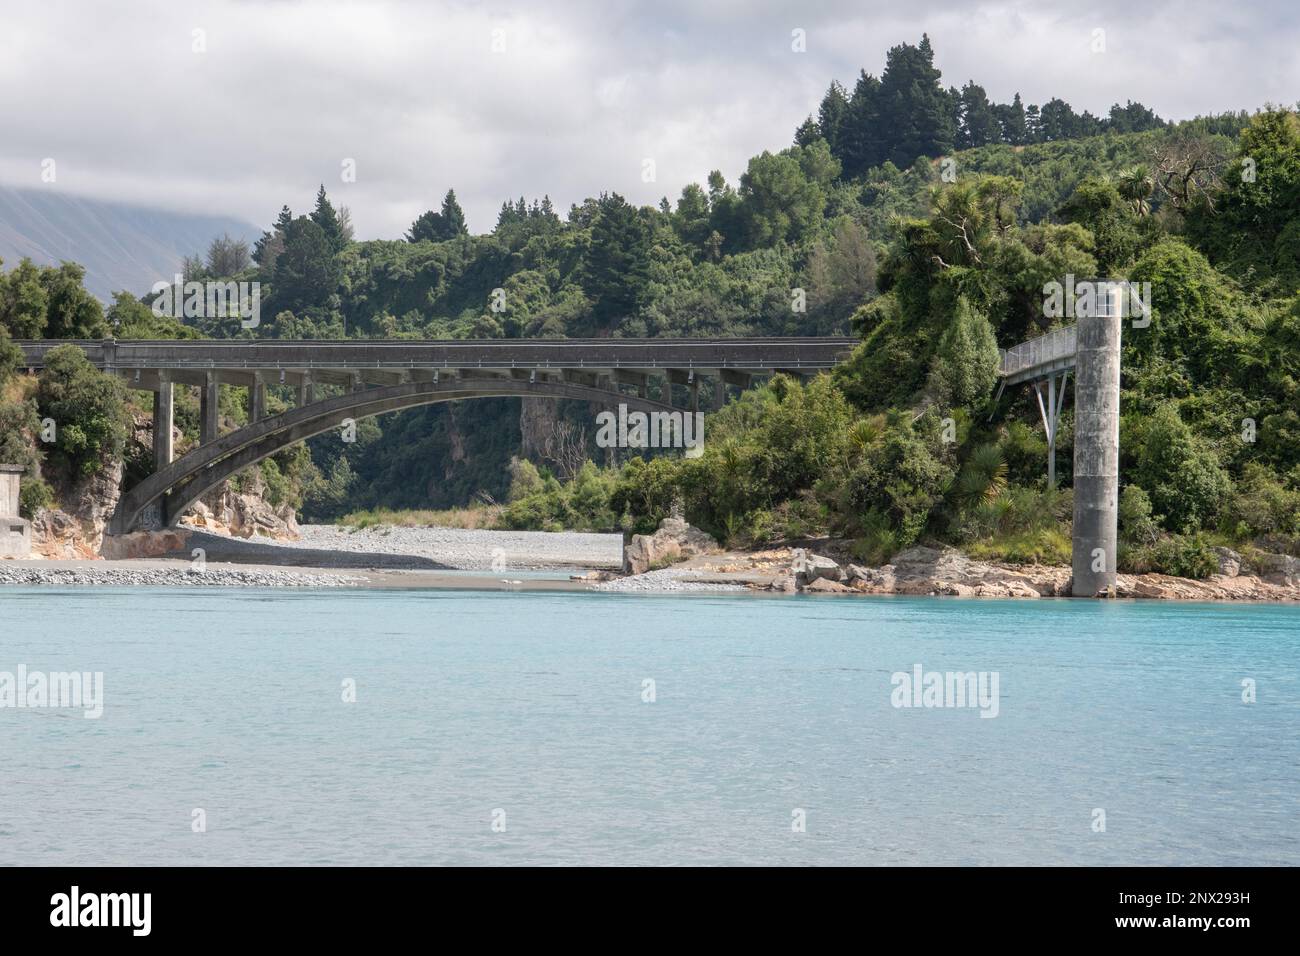 Eine alte historische Brücke über das leuchtend blaue Wasser des Flusses Rakaia in Neuseeland. Stockfoto